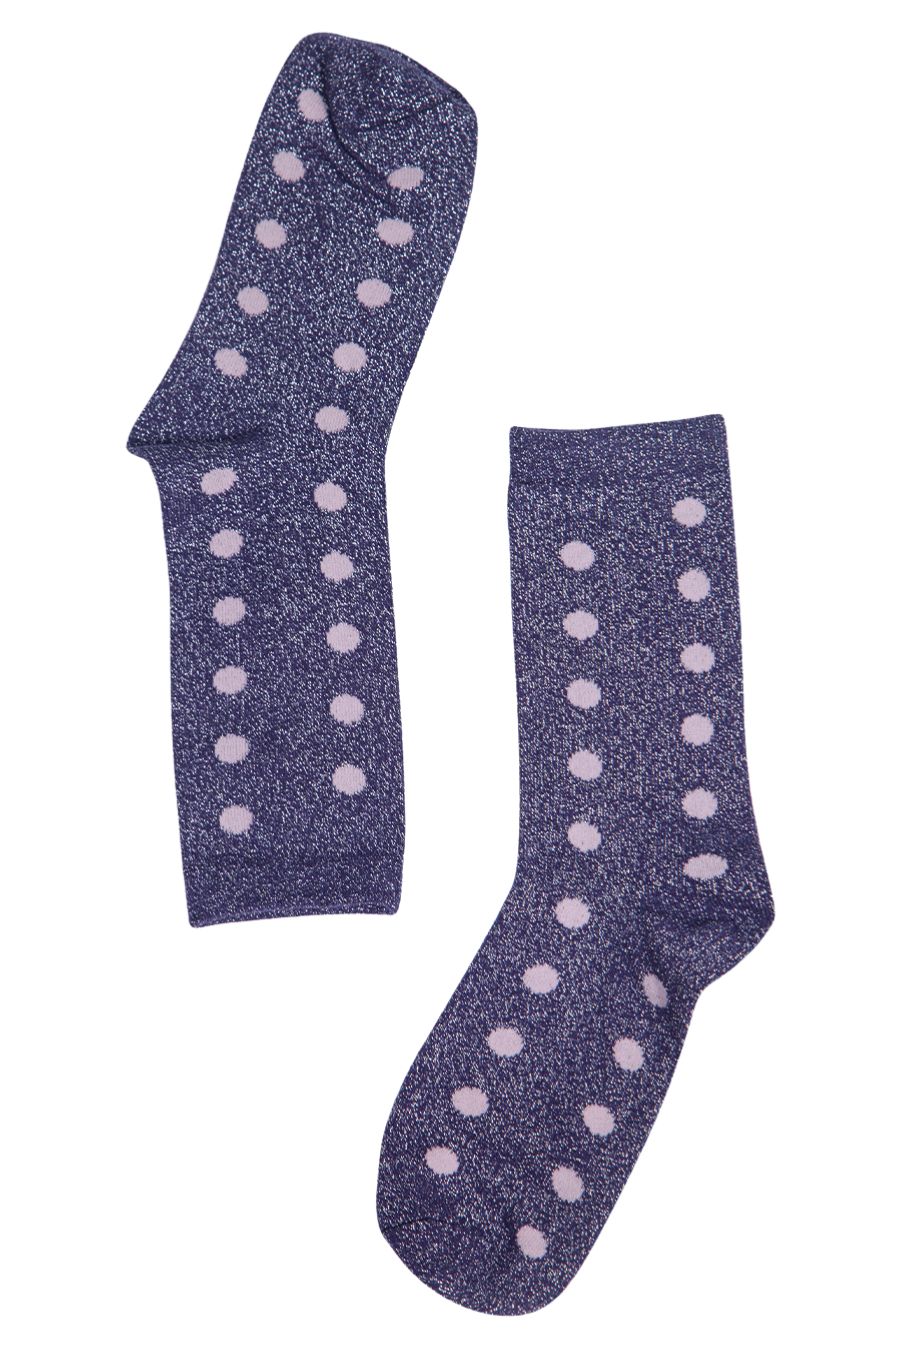 Womens Glitter Socks Polka Dot Sparkly Ankle Socks Shimmer Navy Blue